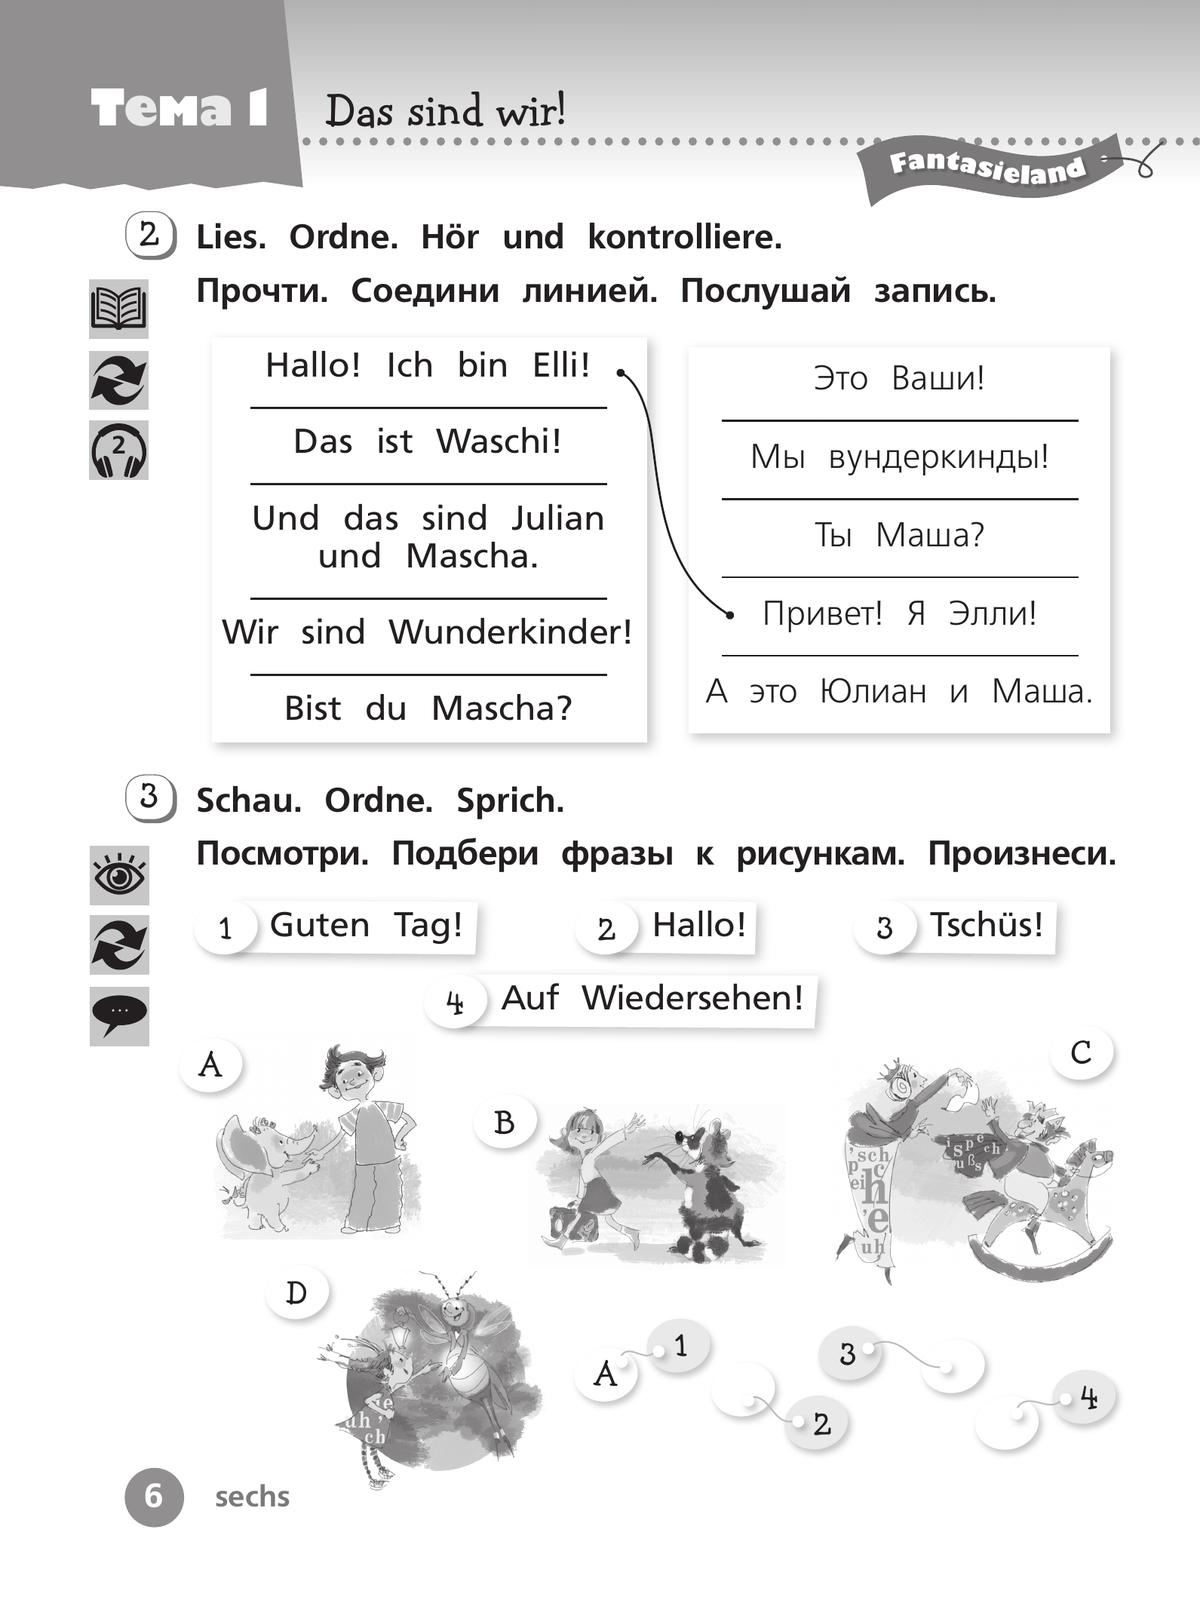 Немецкий язык. Рабочая тетрадь. 2 класс В 2-х ч. Ч. 1 8